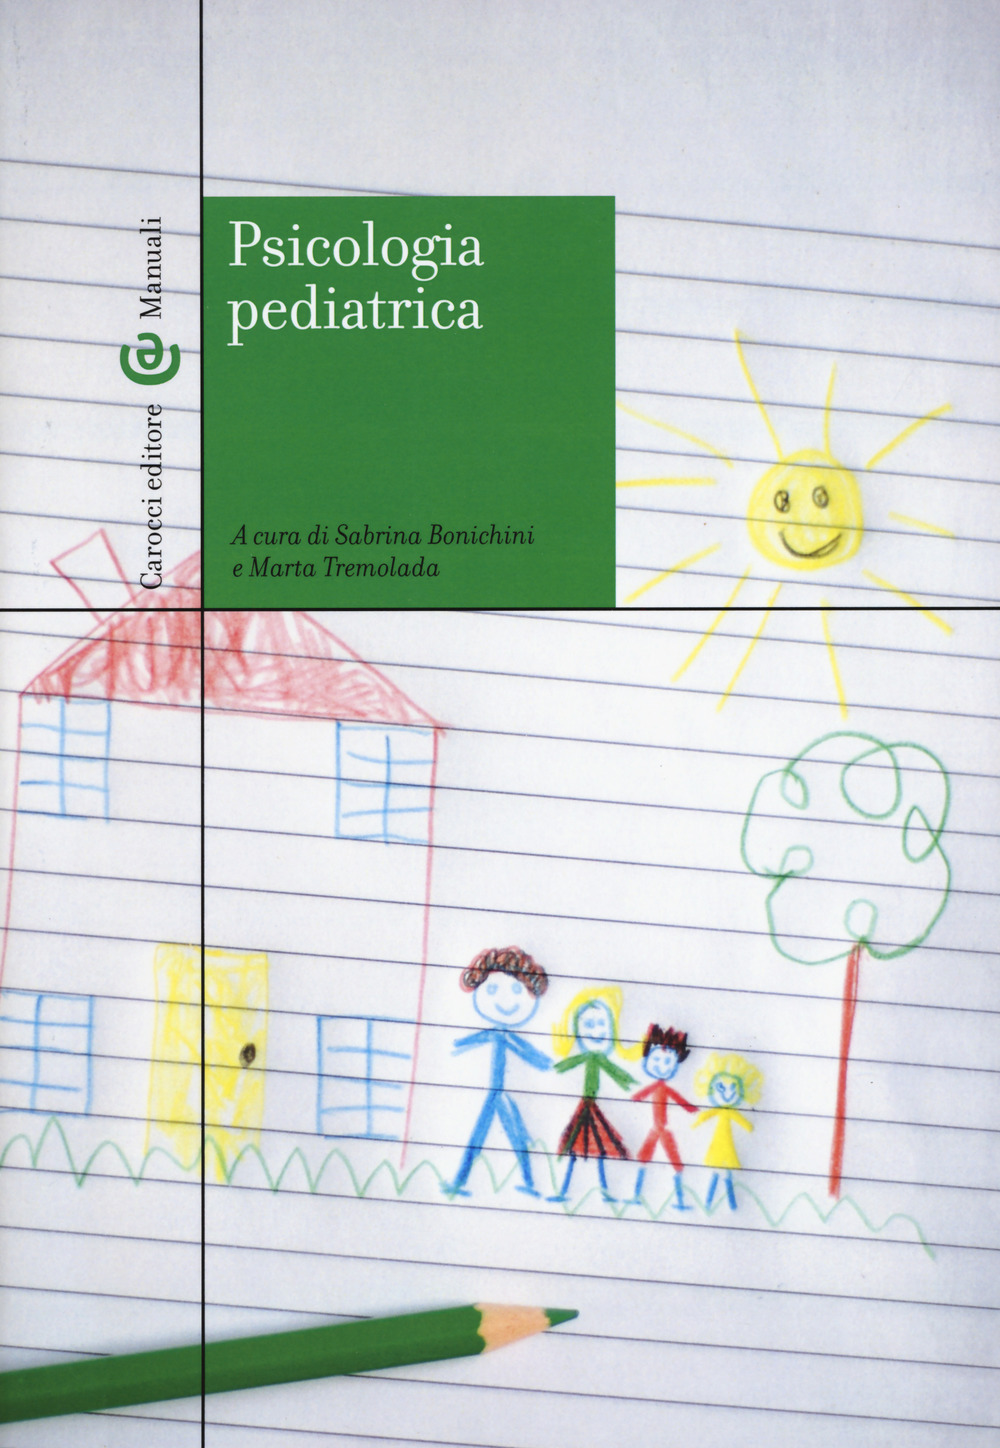 Libri Psicologia Pediatrica NUOVO SIGILLATO, EDIZIONE DEL 27/06/2019 SUBITO DISPONIBILE